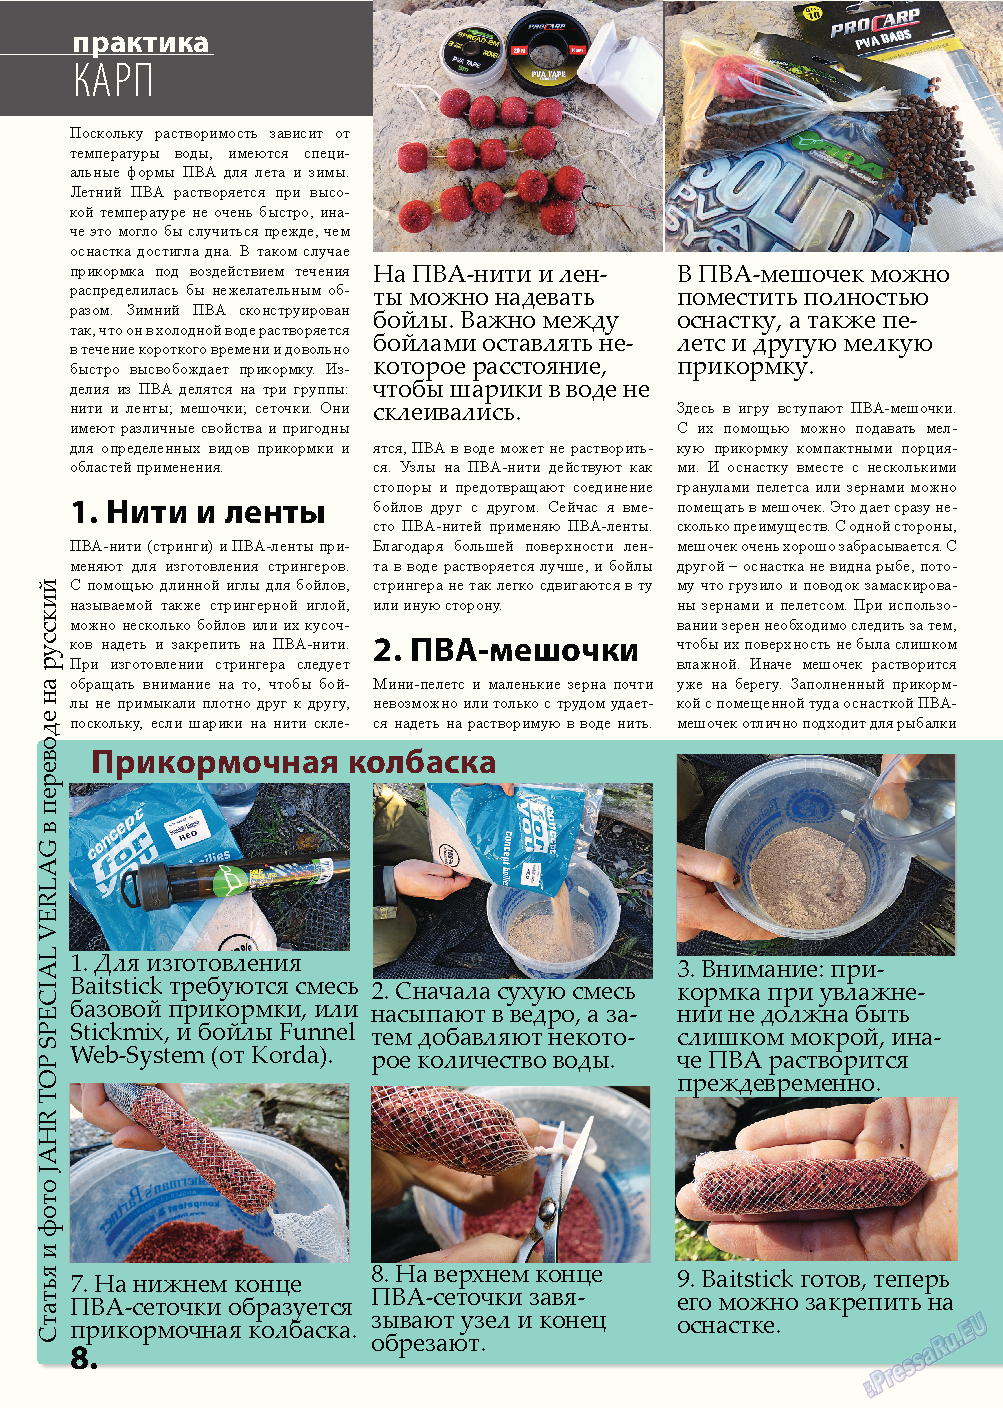 Рыбалка Plus, журнал. 2013 №5 стр.8